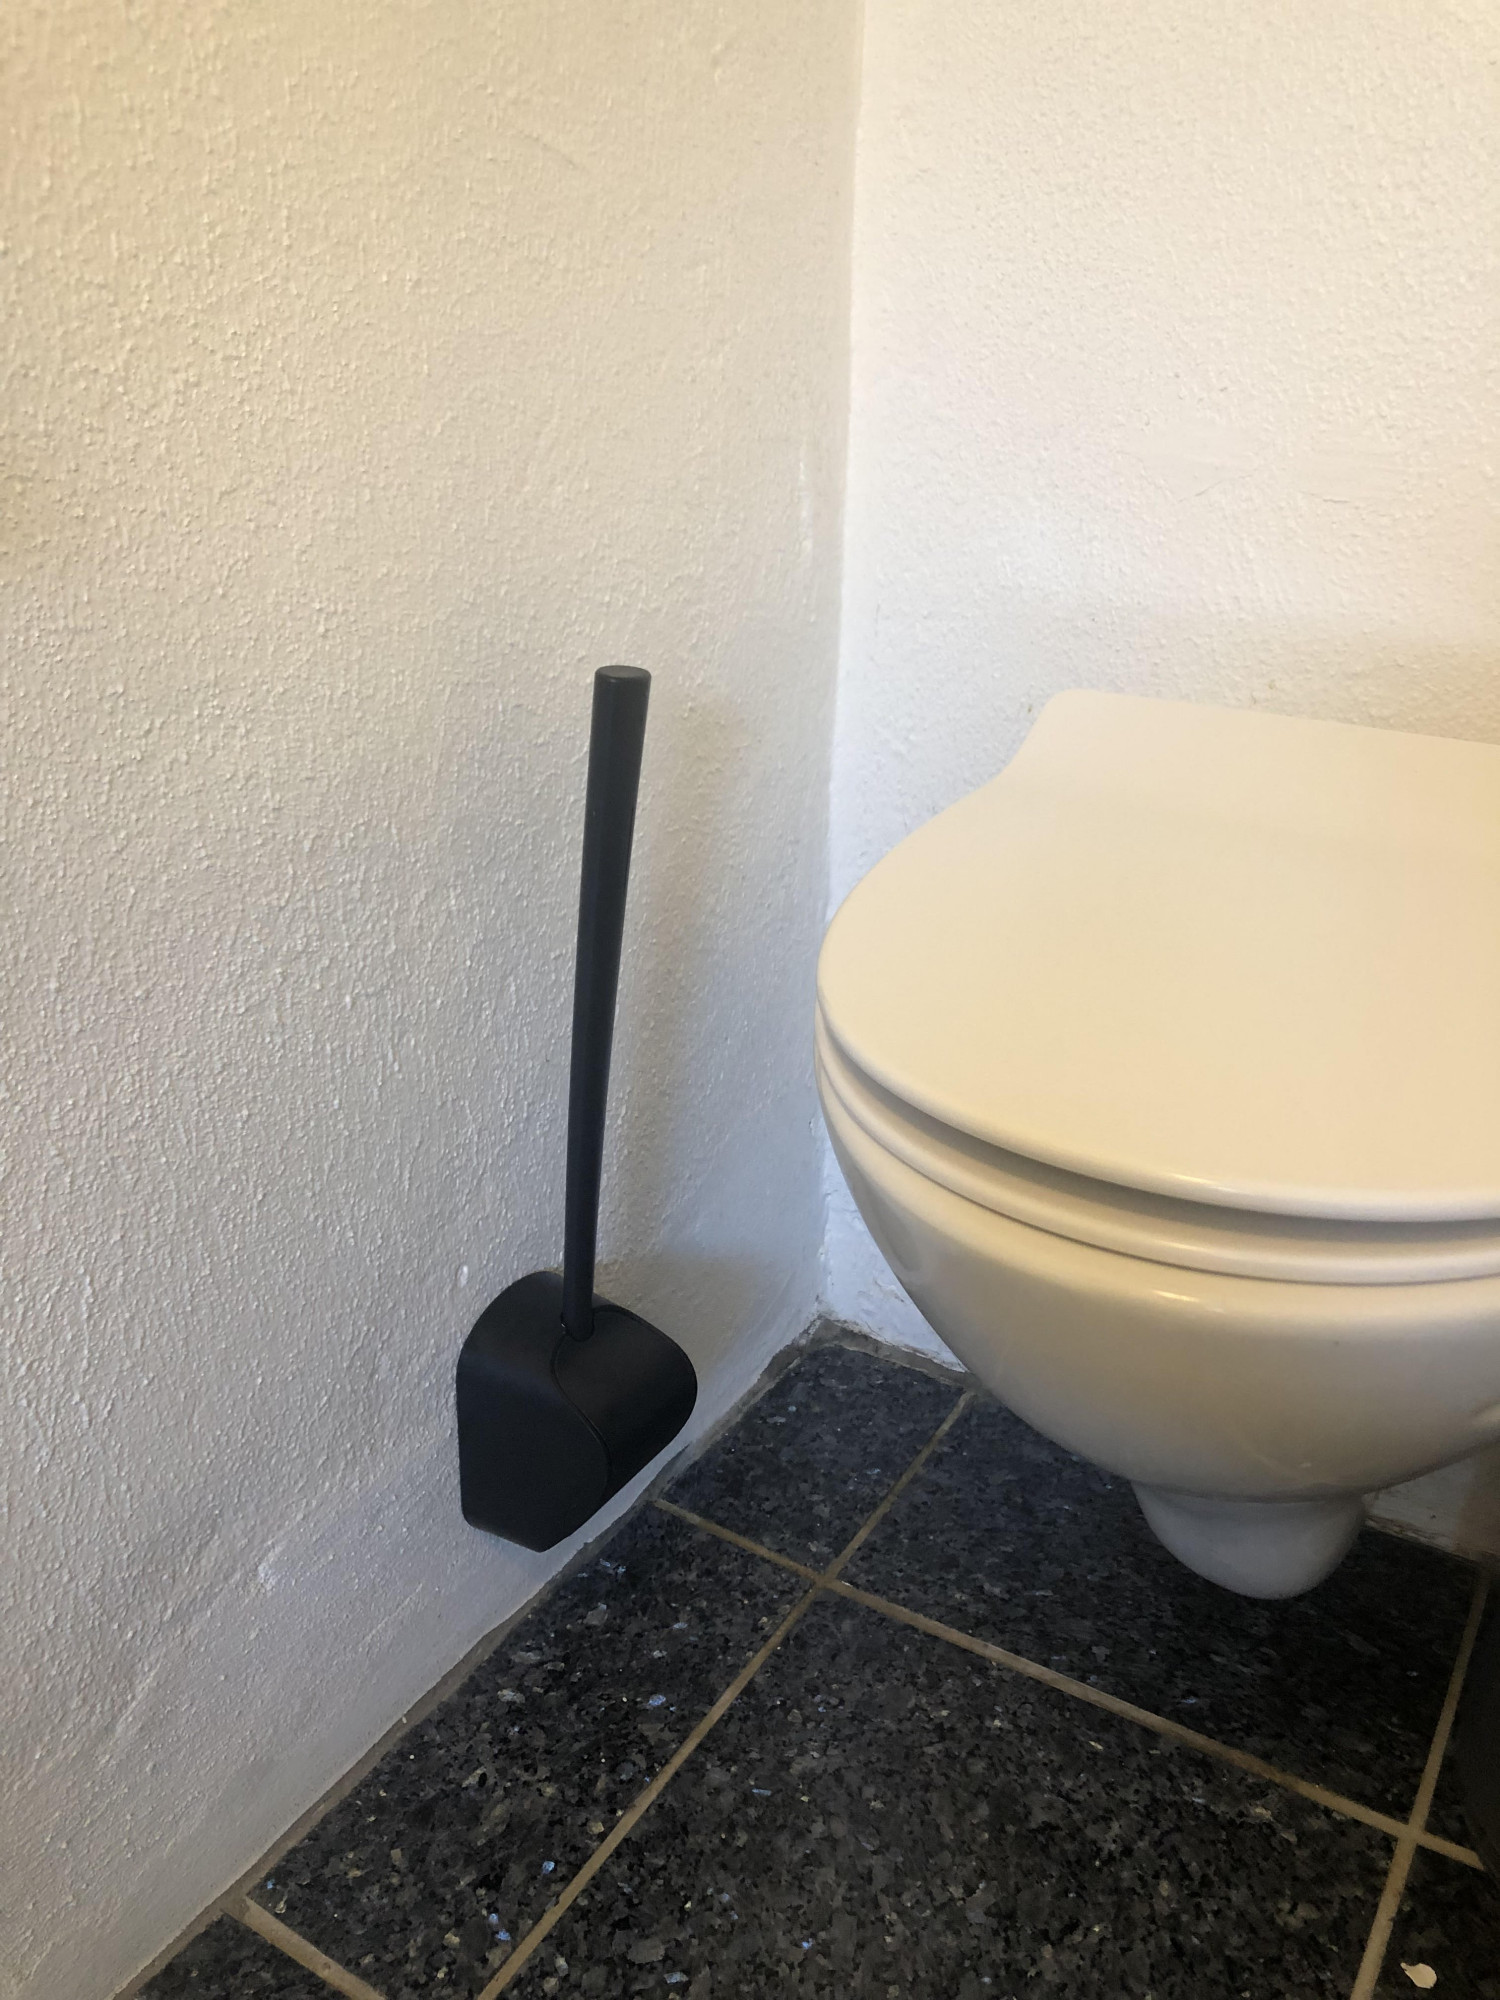 Test toiletter bedst i Find Bedst